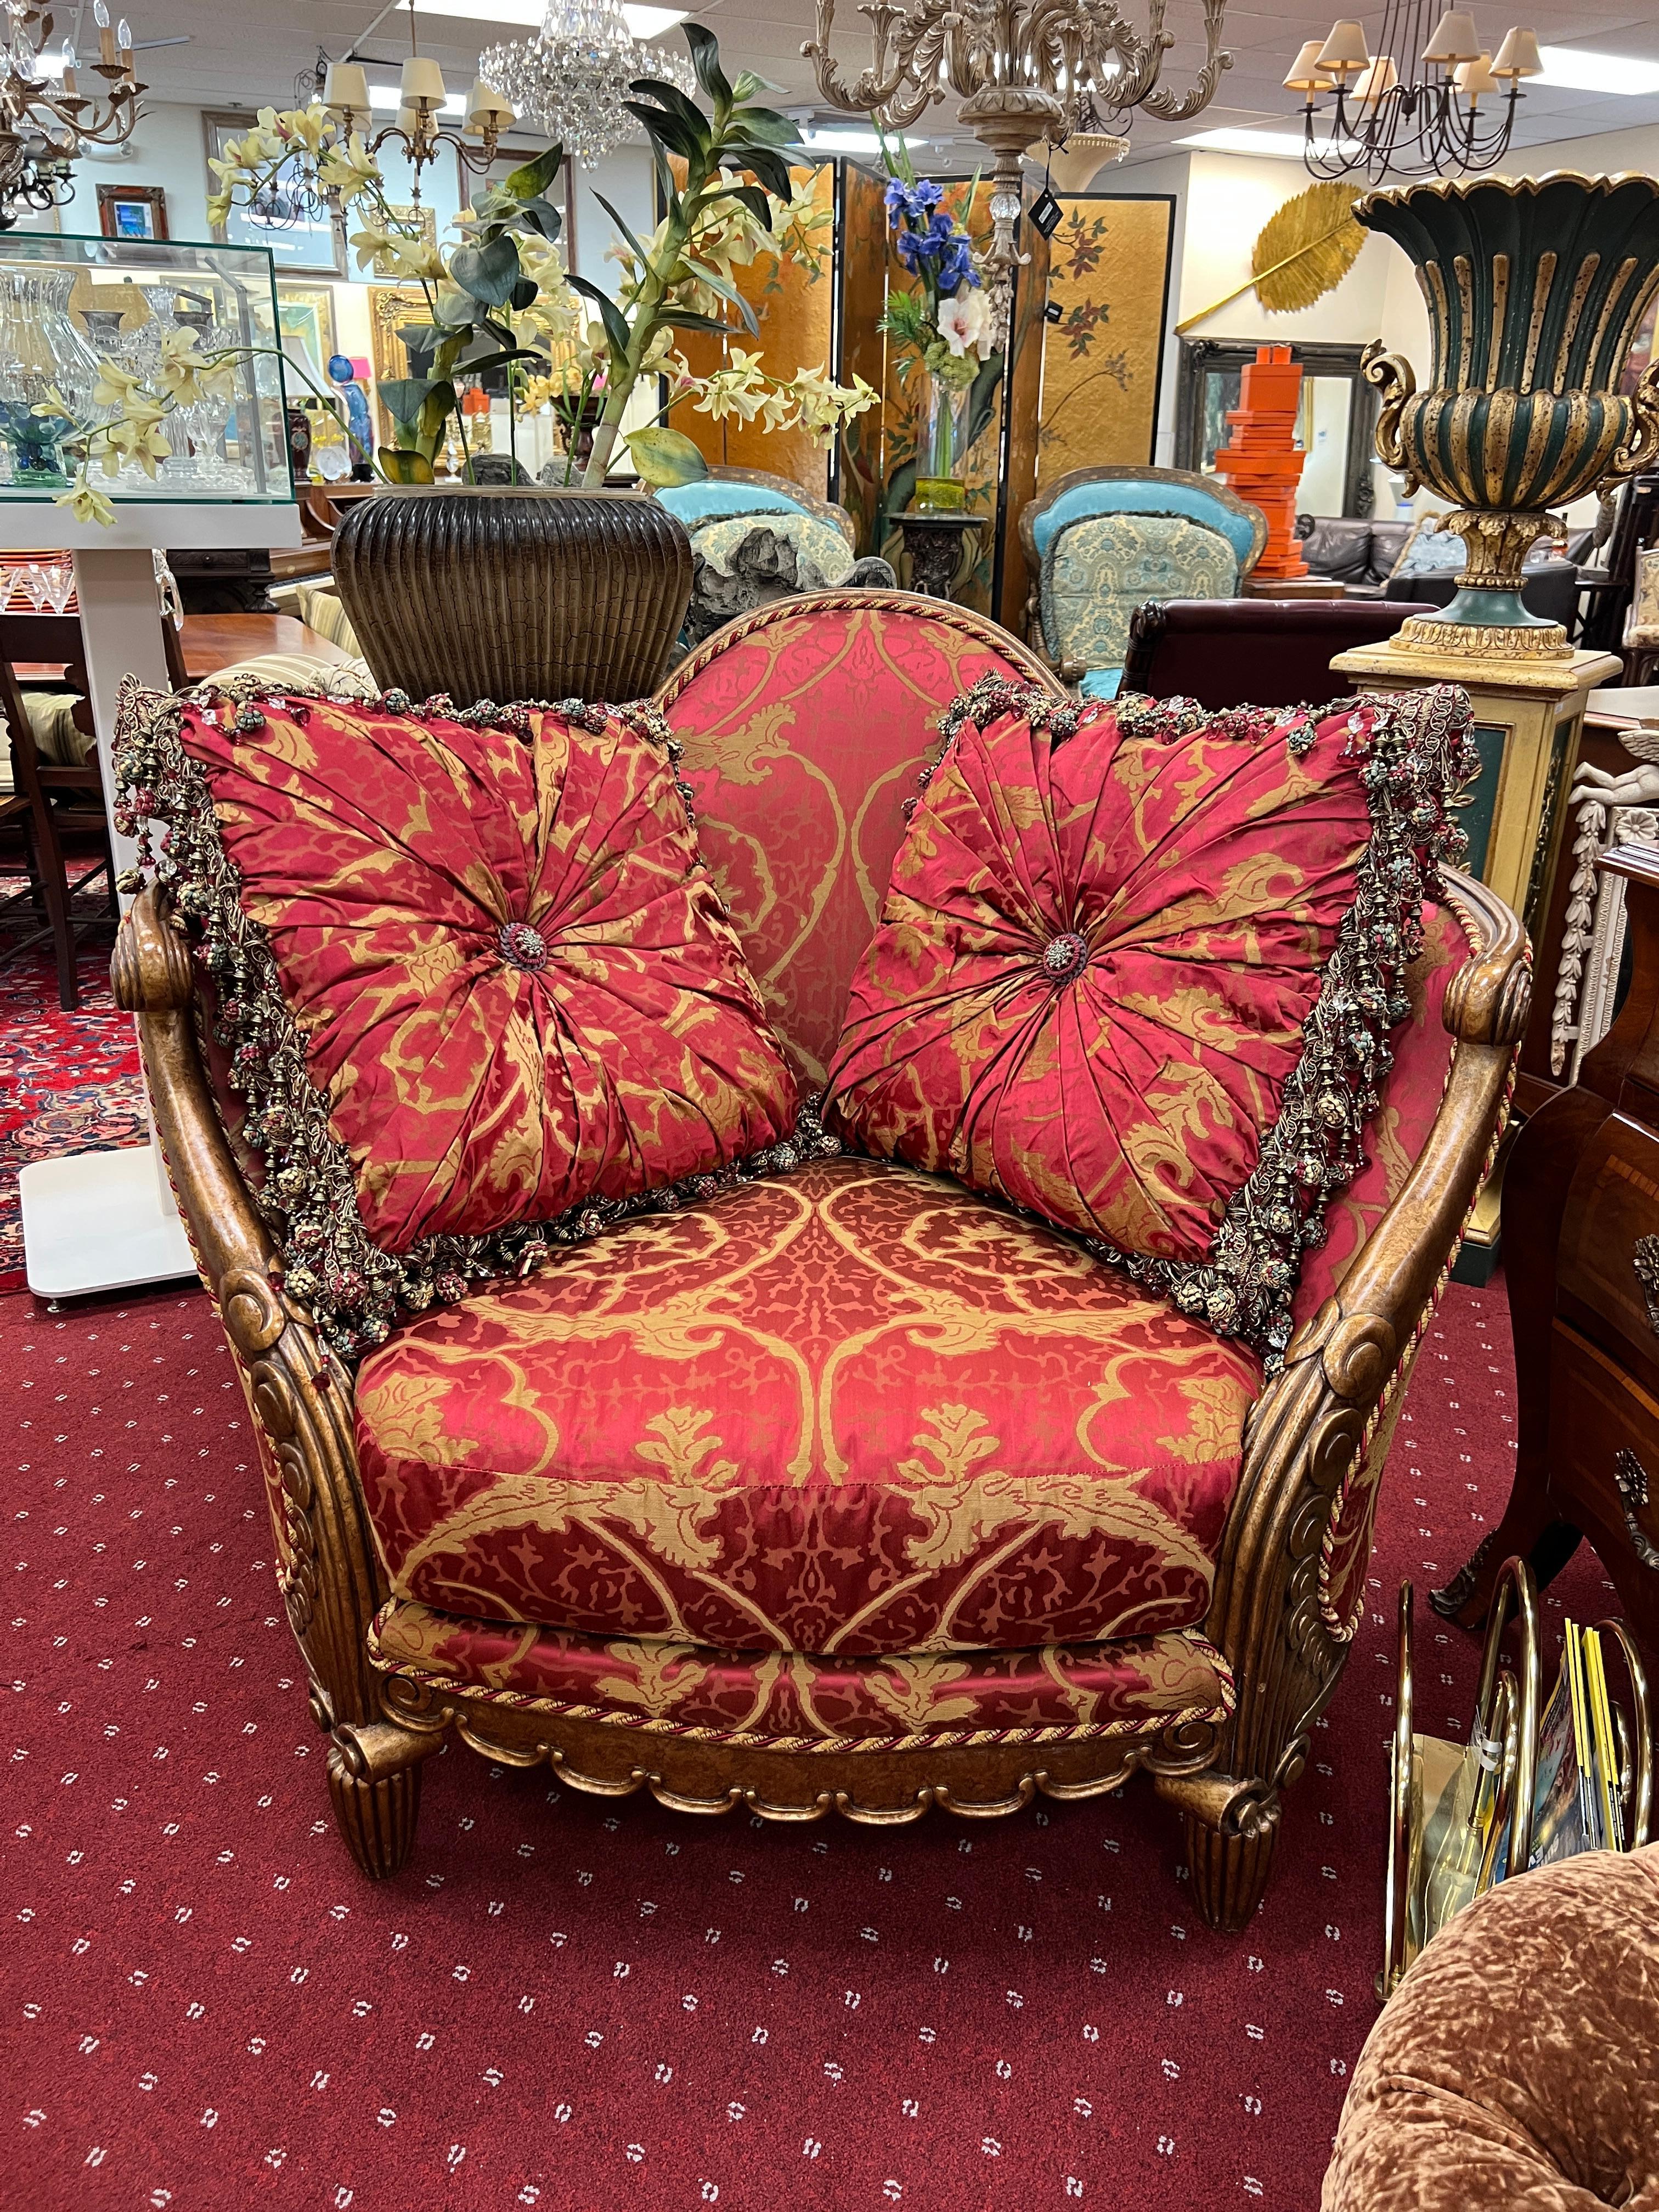 Une étonnante chaise longue surdimensionnée de Tomlinson, recouverte d'un tissu damassé rose-rouge. Les oreillers faits sur mesure sont inclus, comme illustré. Les garnitures complexes de l'oreiller témoignent de l'attention portée aux détails et